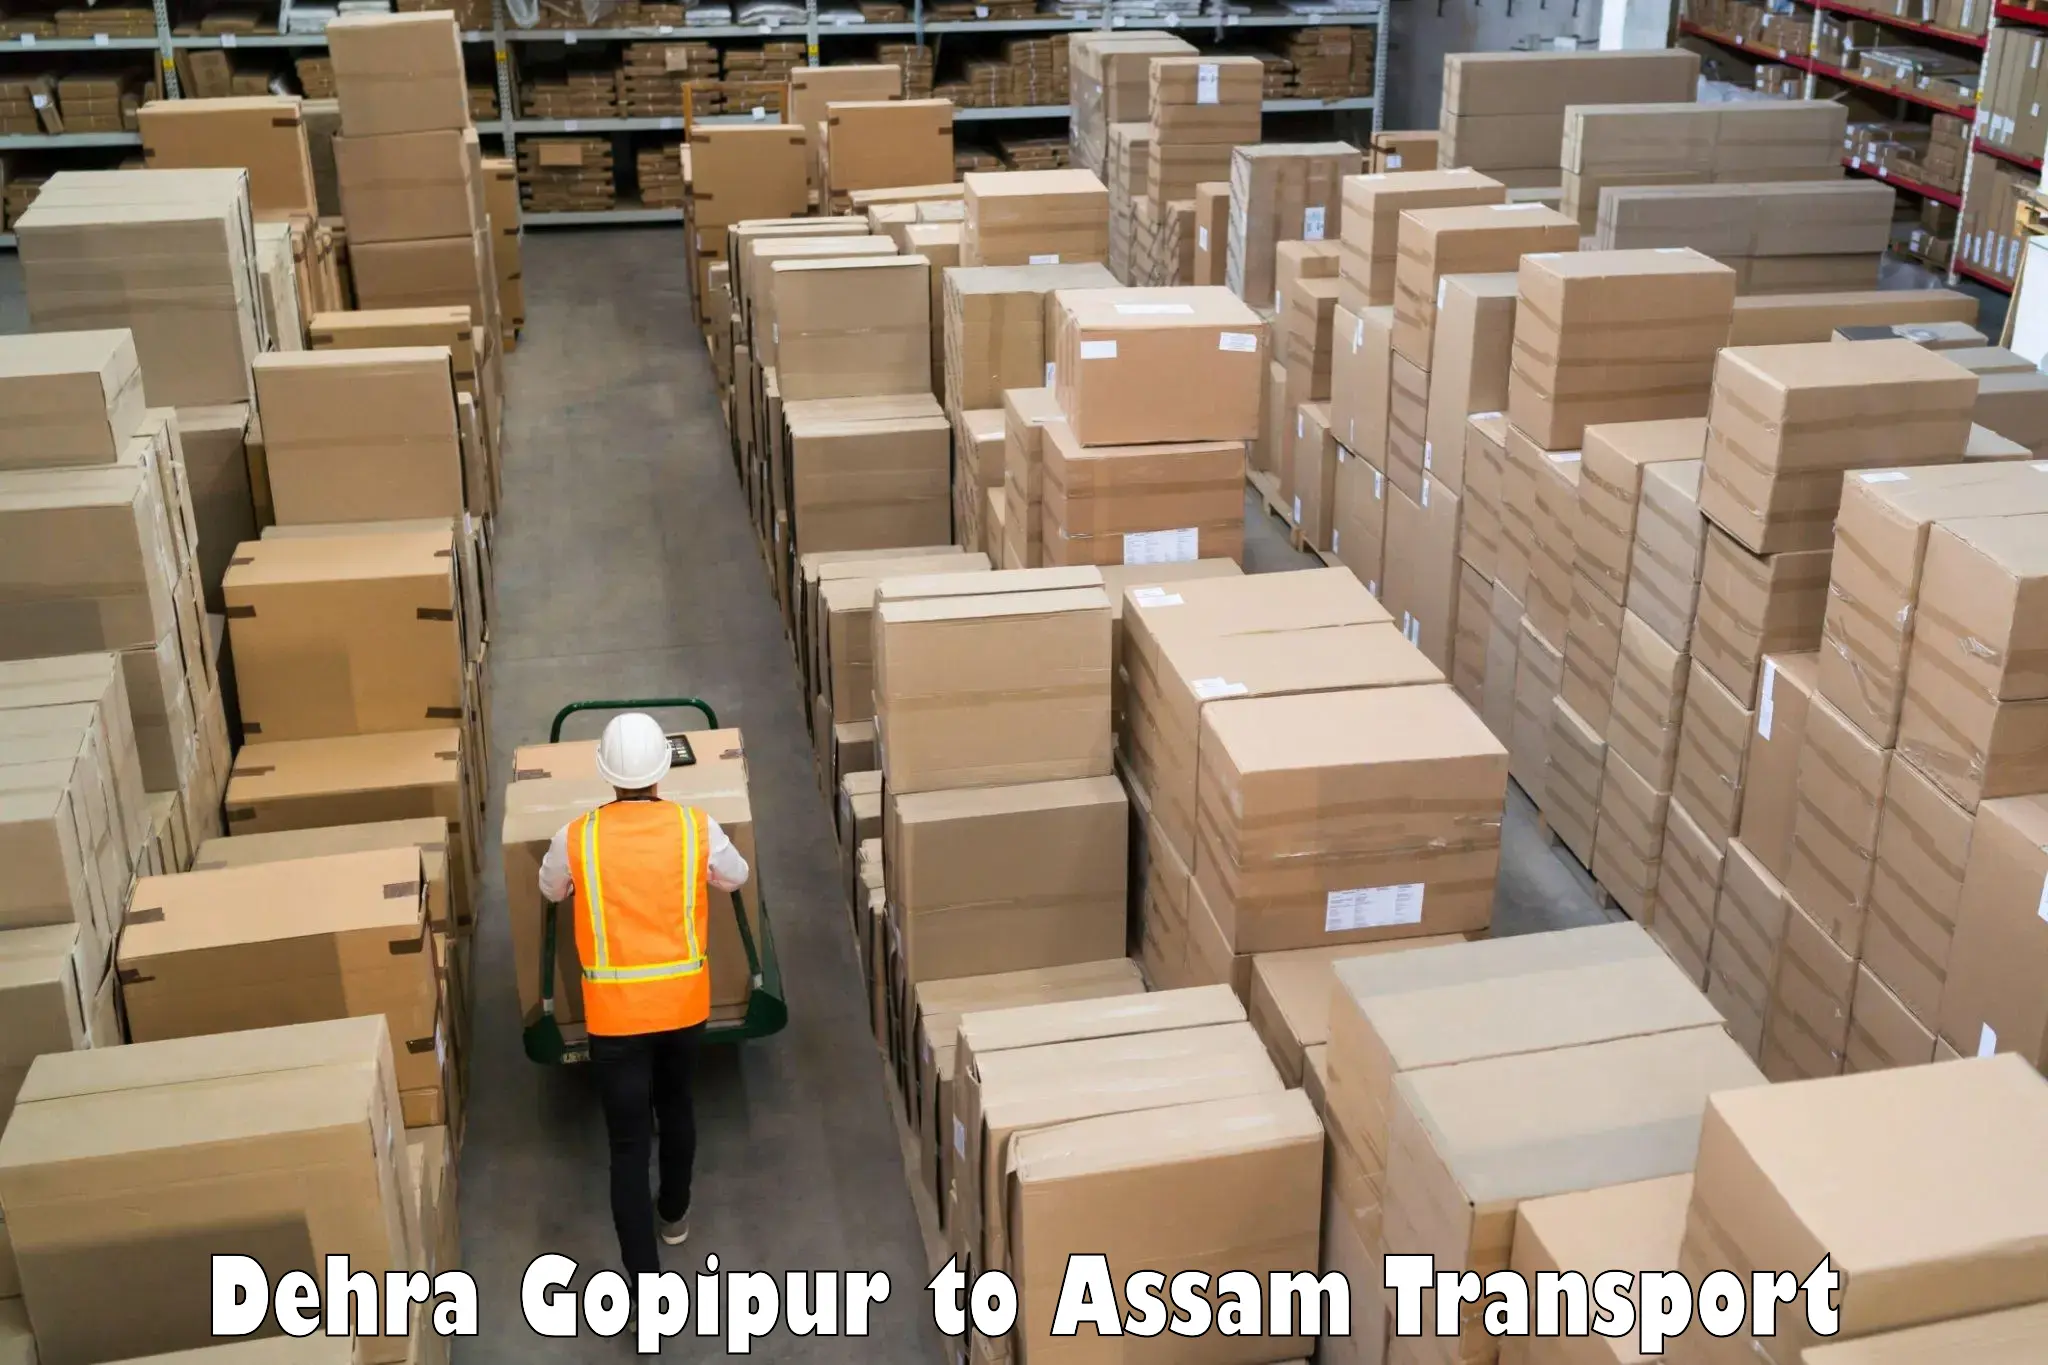 Vehicle transport services Dehra Gopipur to Gossaigaon